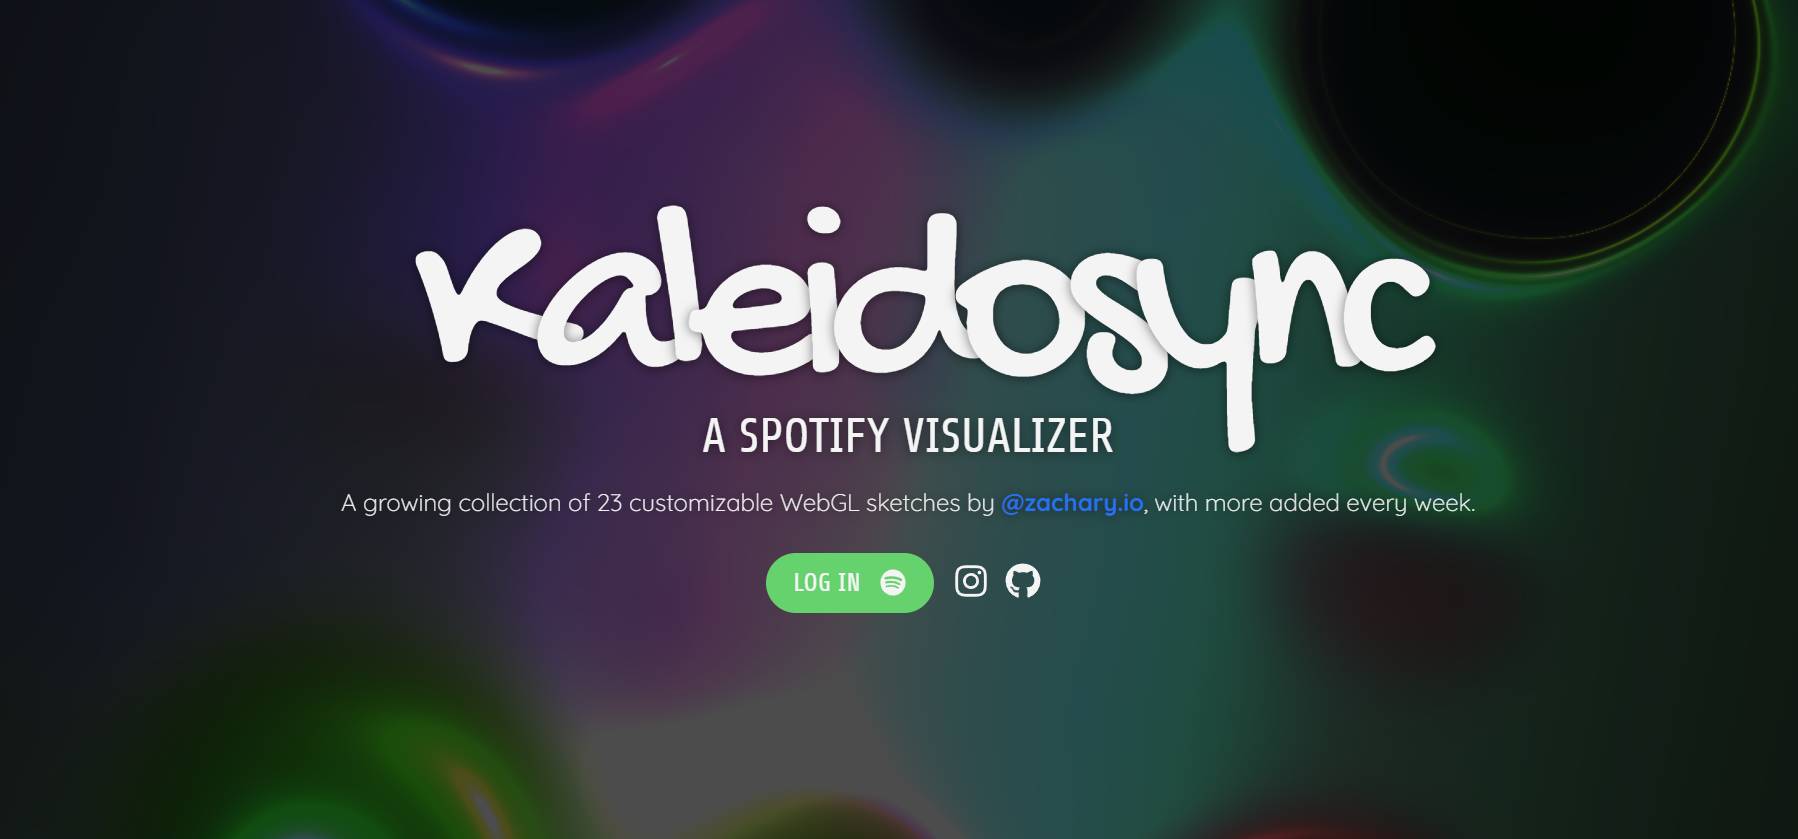 Ассоциация Spotify Визуализатор под названием Kaleidosync Visualizer можно использовать в Интернете